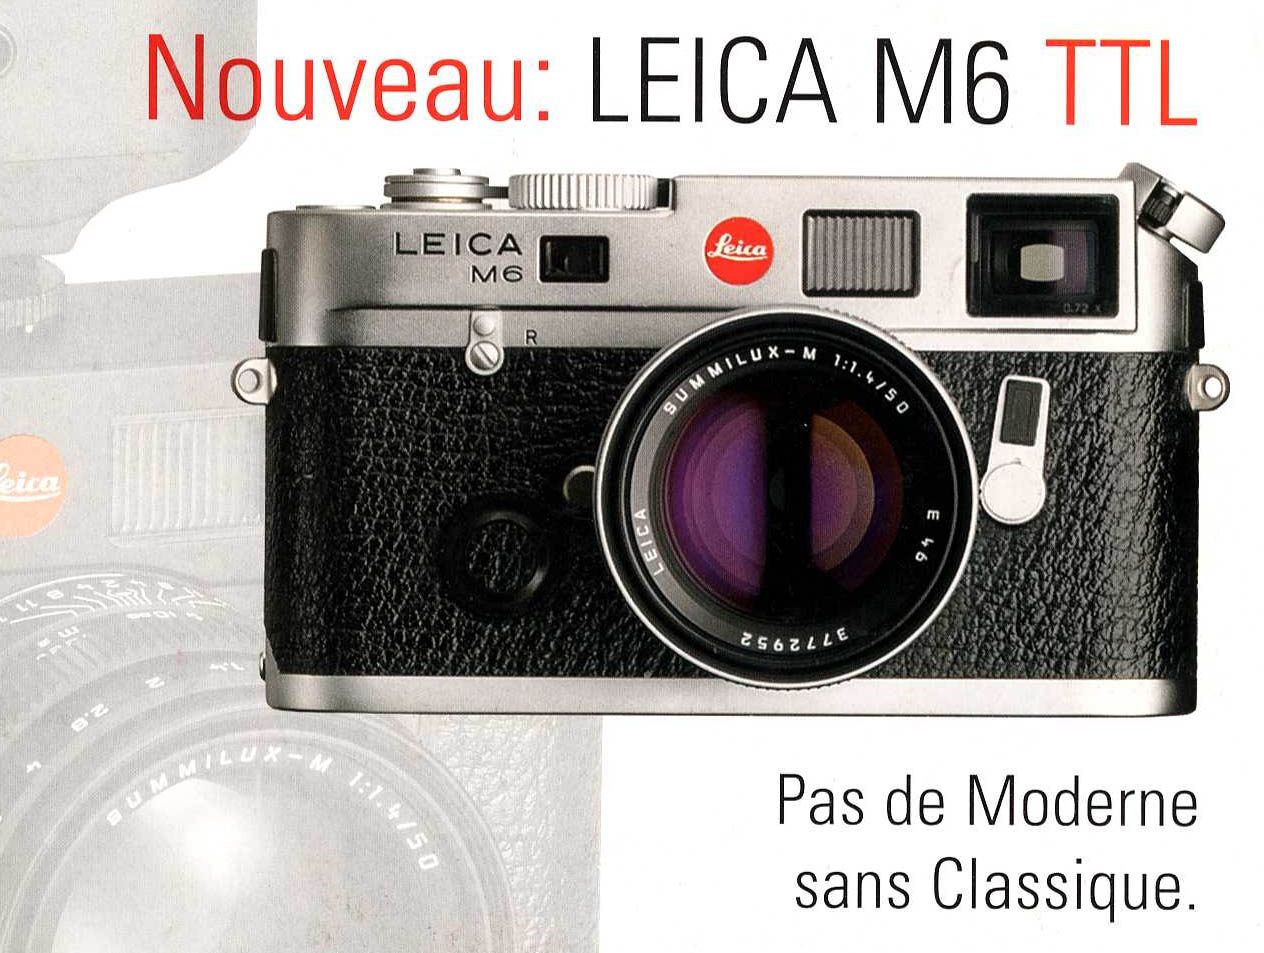 Le Leica M6 TTL, dernière évolution technique du M6, prônait déjà le classicisme.